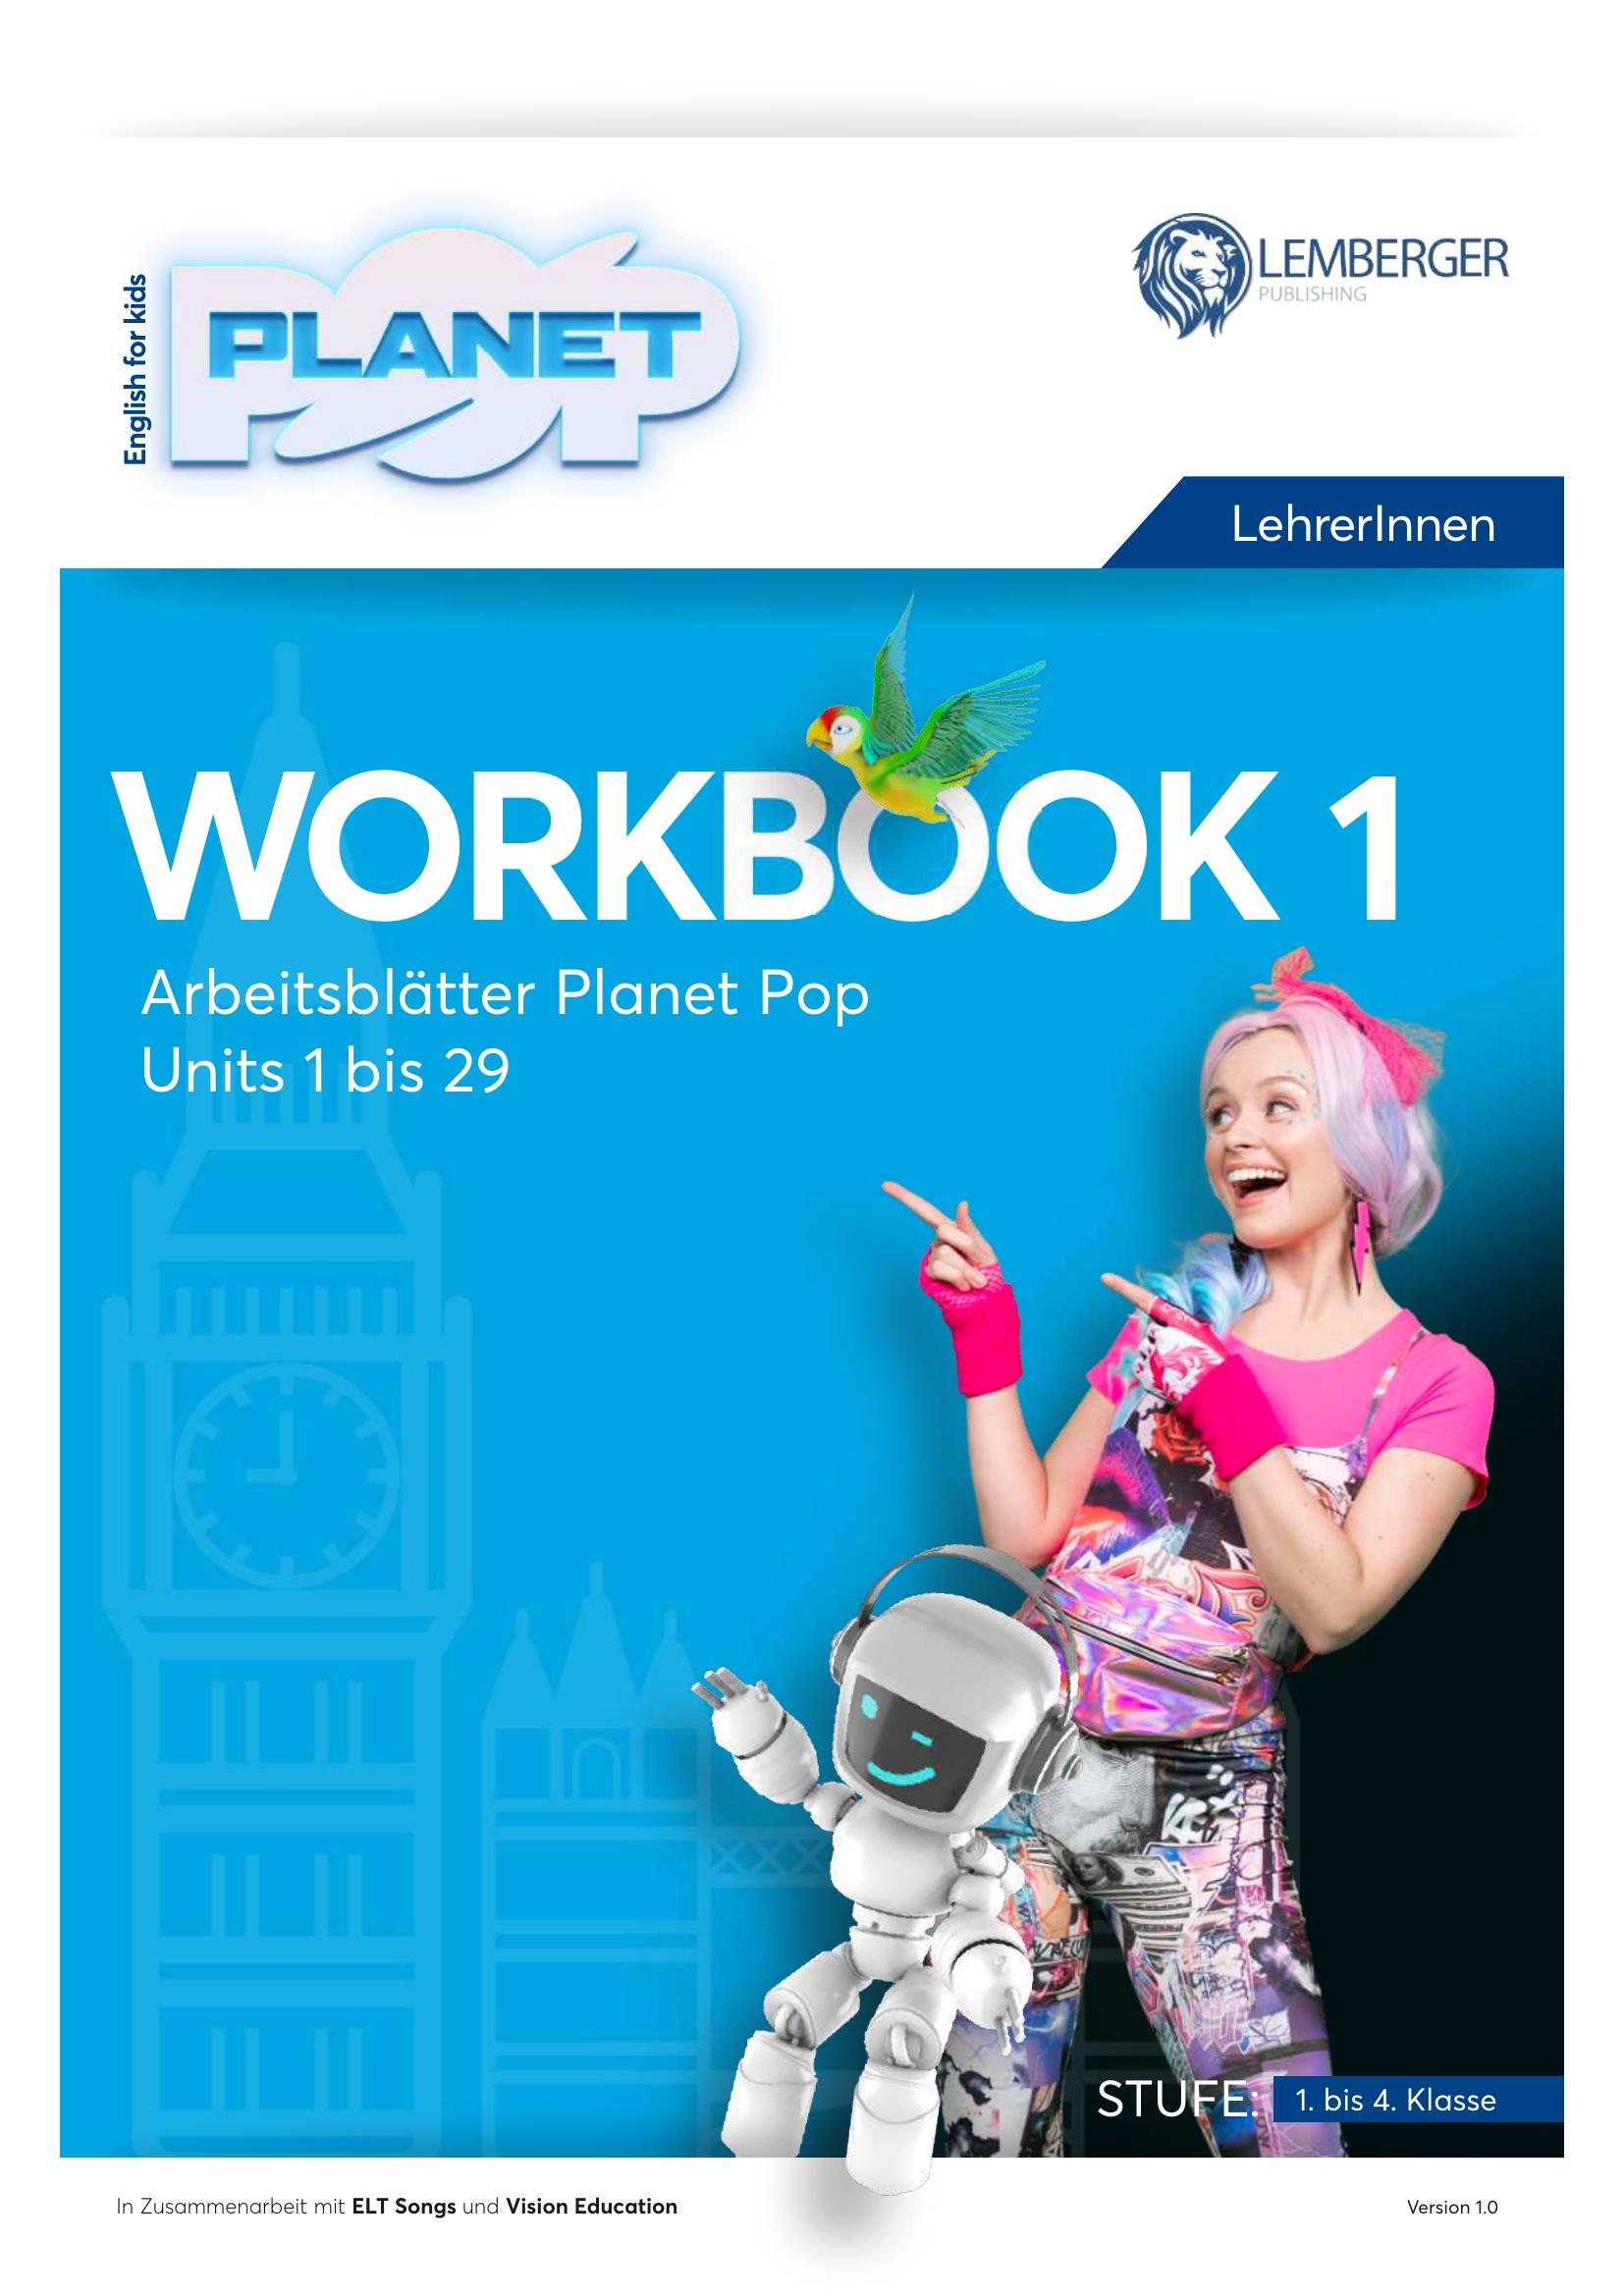 Planet Pop: Workbook 1 - Arbeitsblätter für LehrerInnen - Units 1 - 29